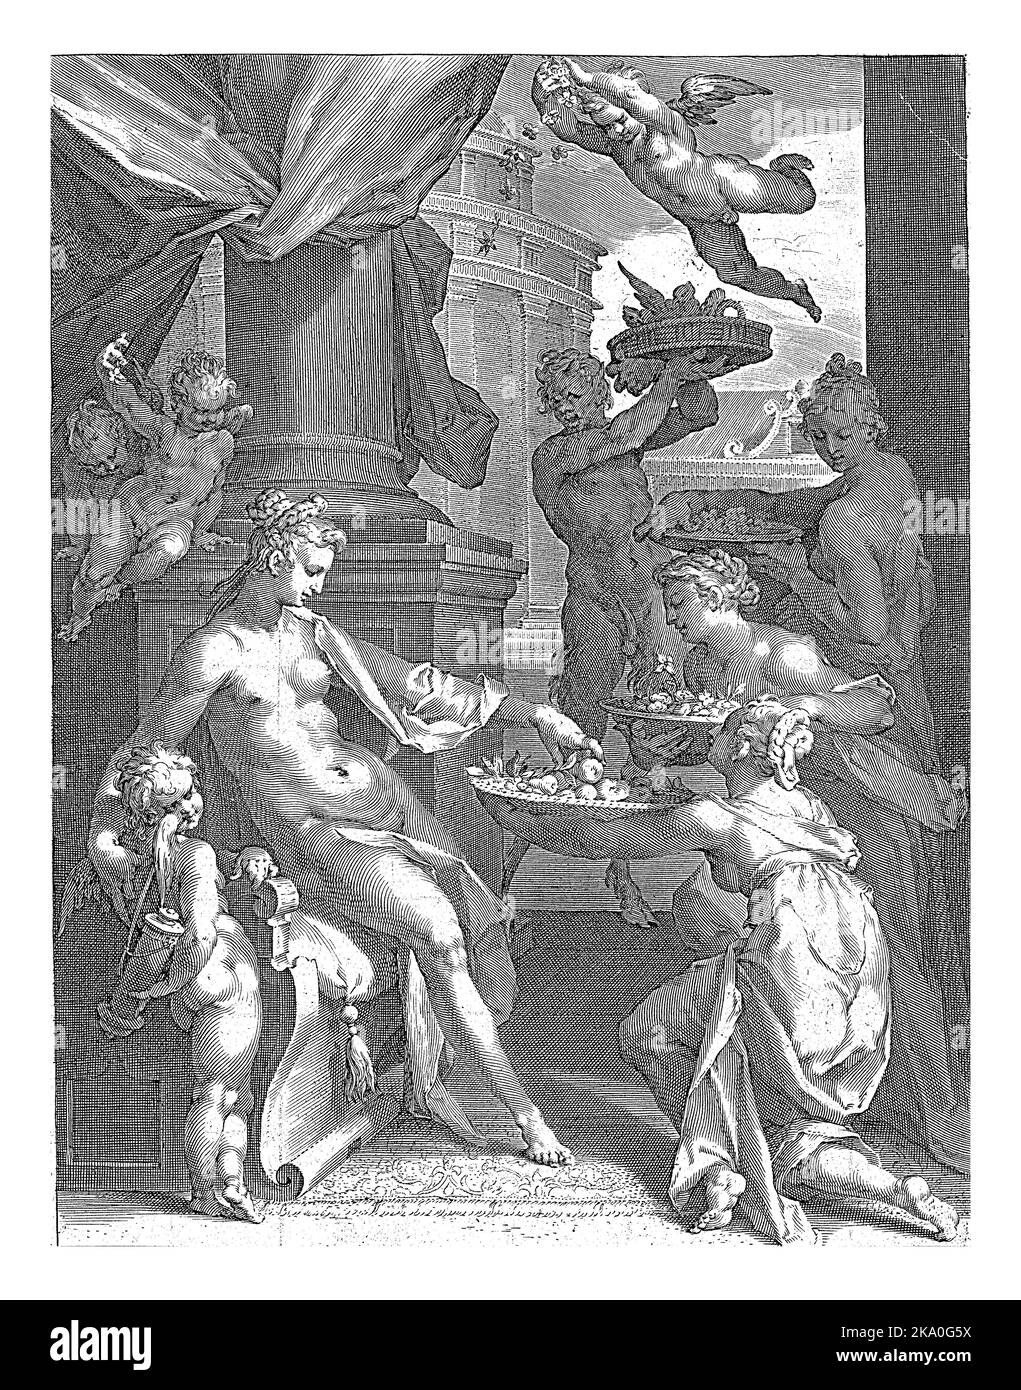 Venus, mit Amor an ihrer Seite, erhält Körbe mit Blumen und Früchten von den Nymphen. Ein Satyr bringt einen Korb mit Vögeln. Stockfoto